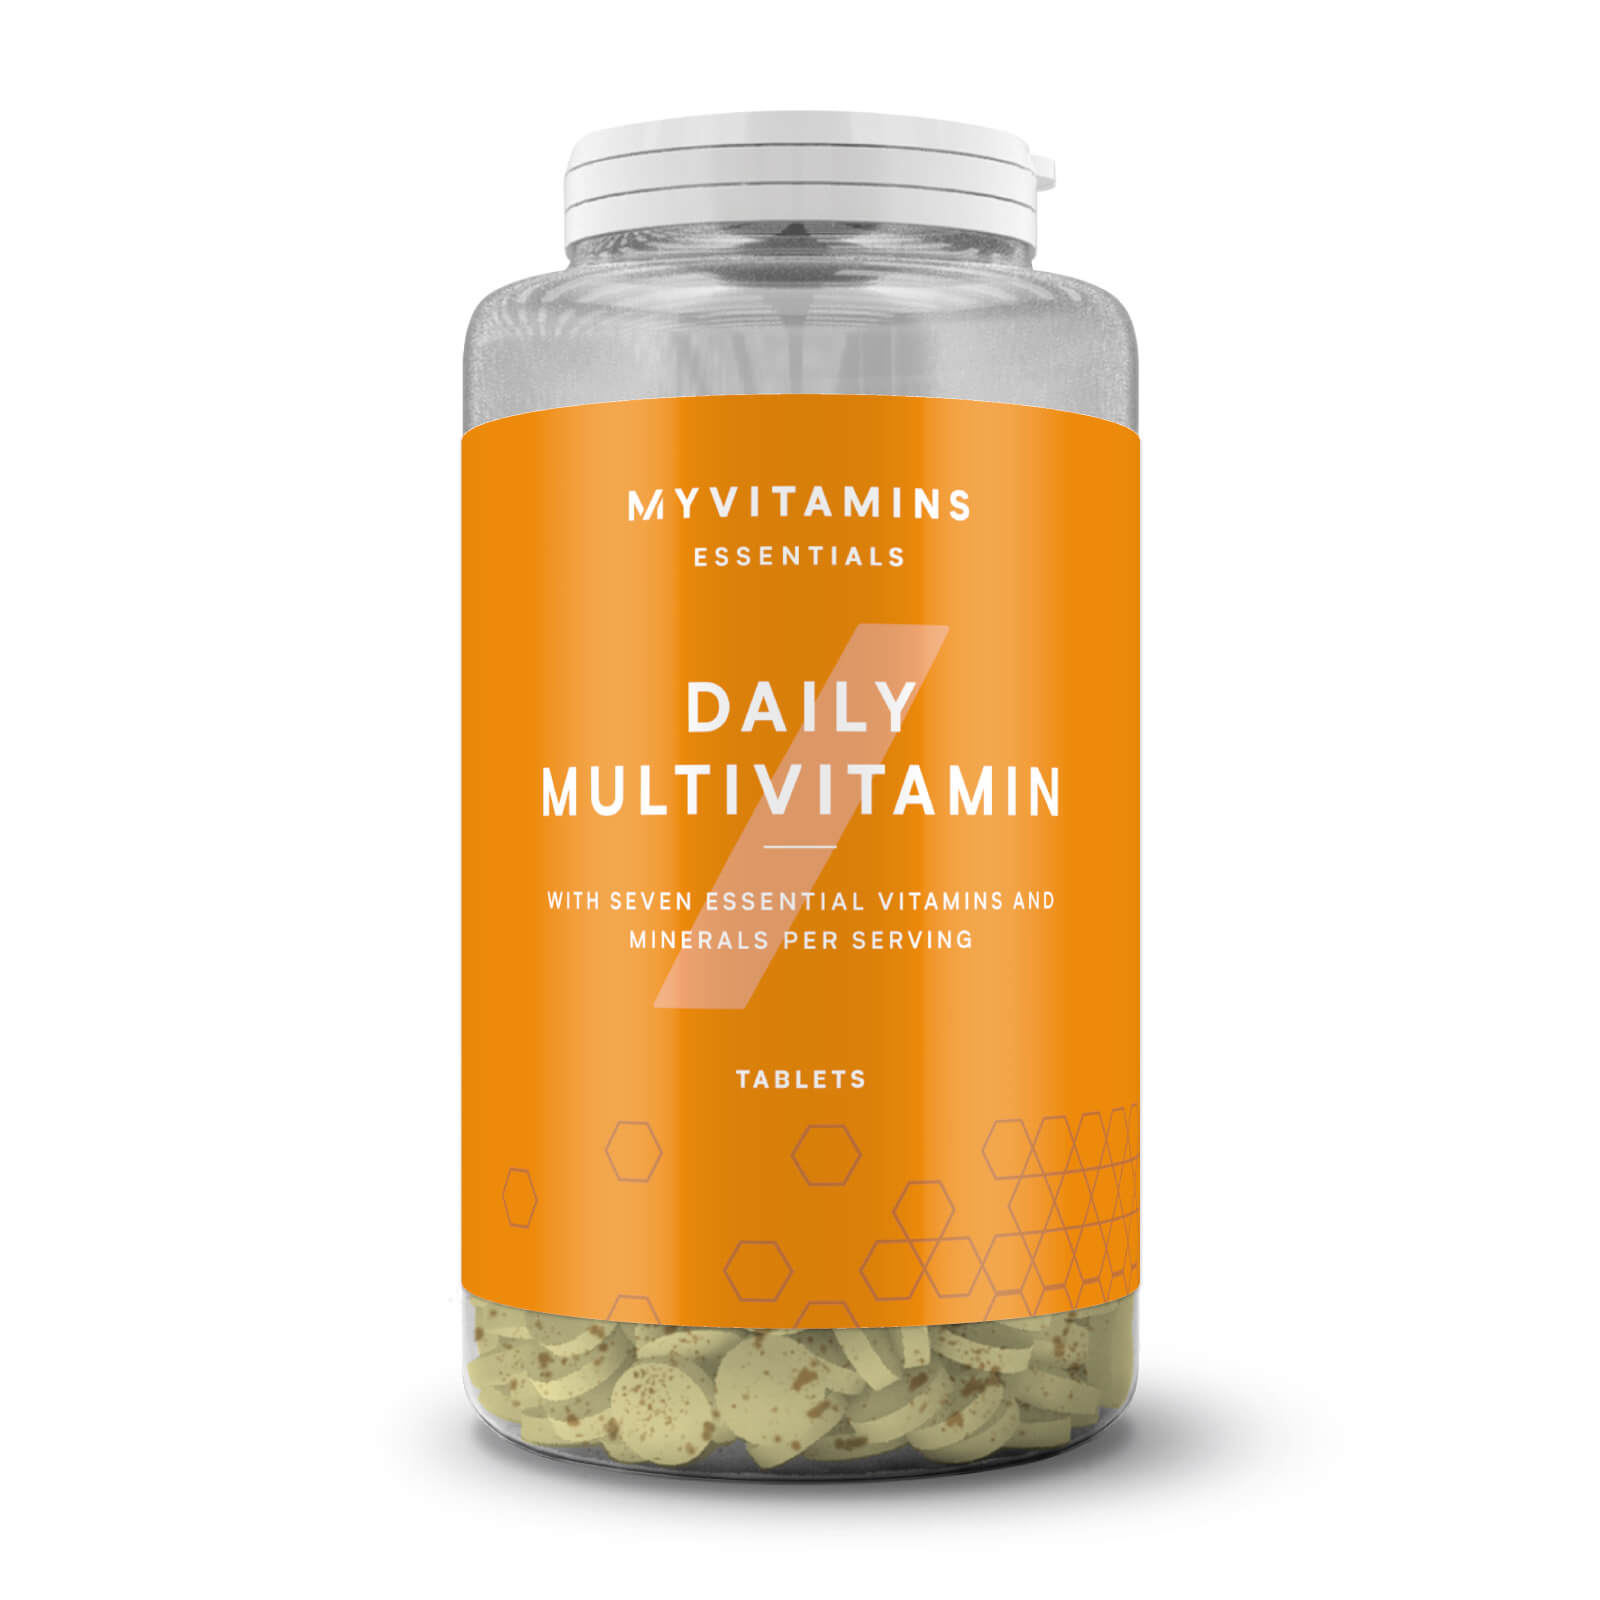 Myvitamins Daily Multivitamin Tablets - 180Tablets